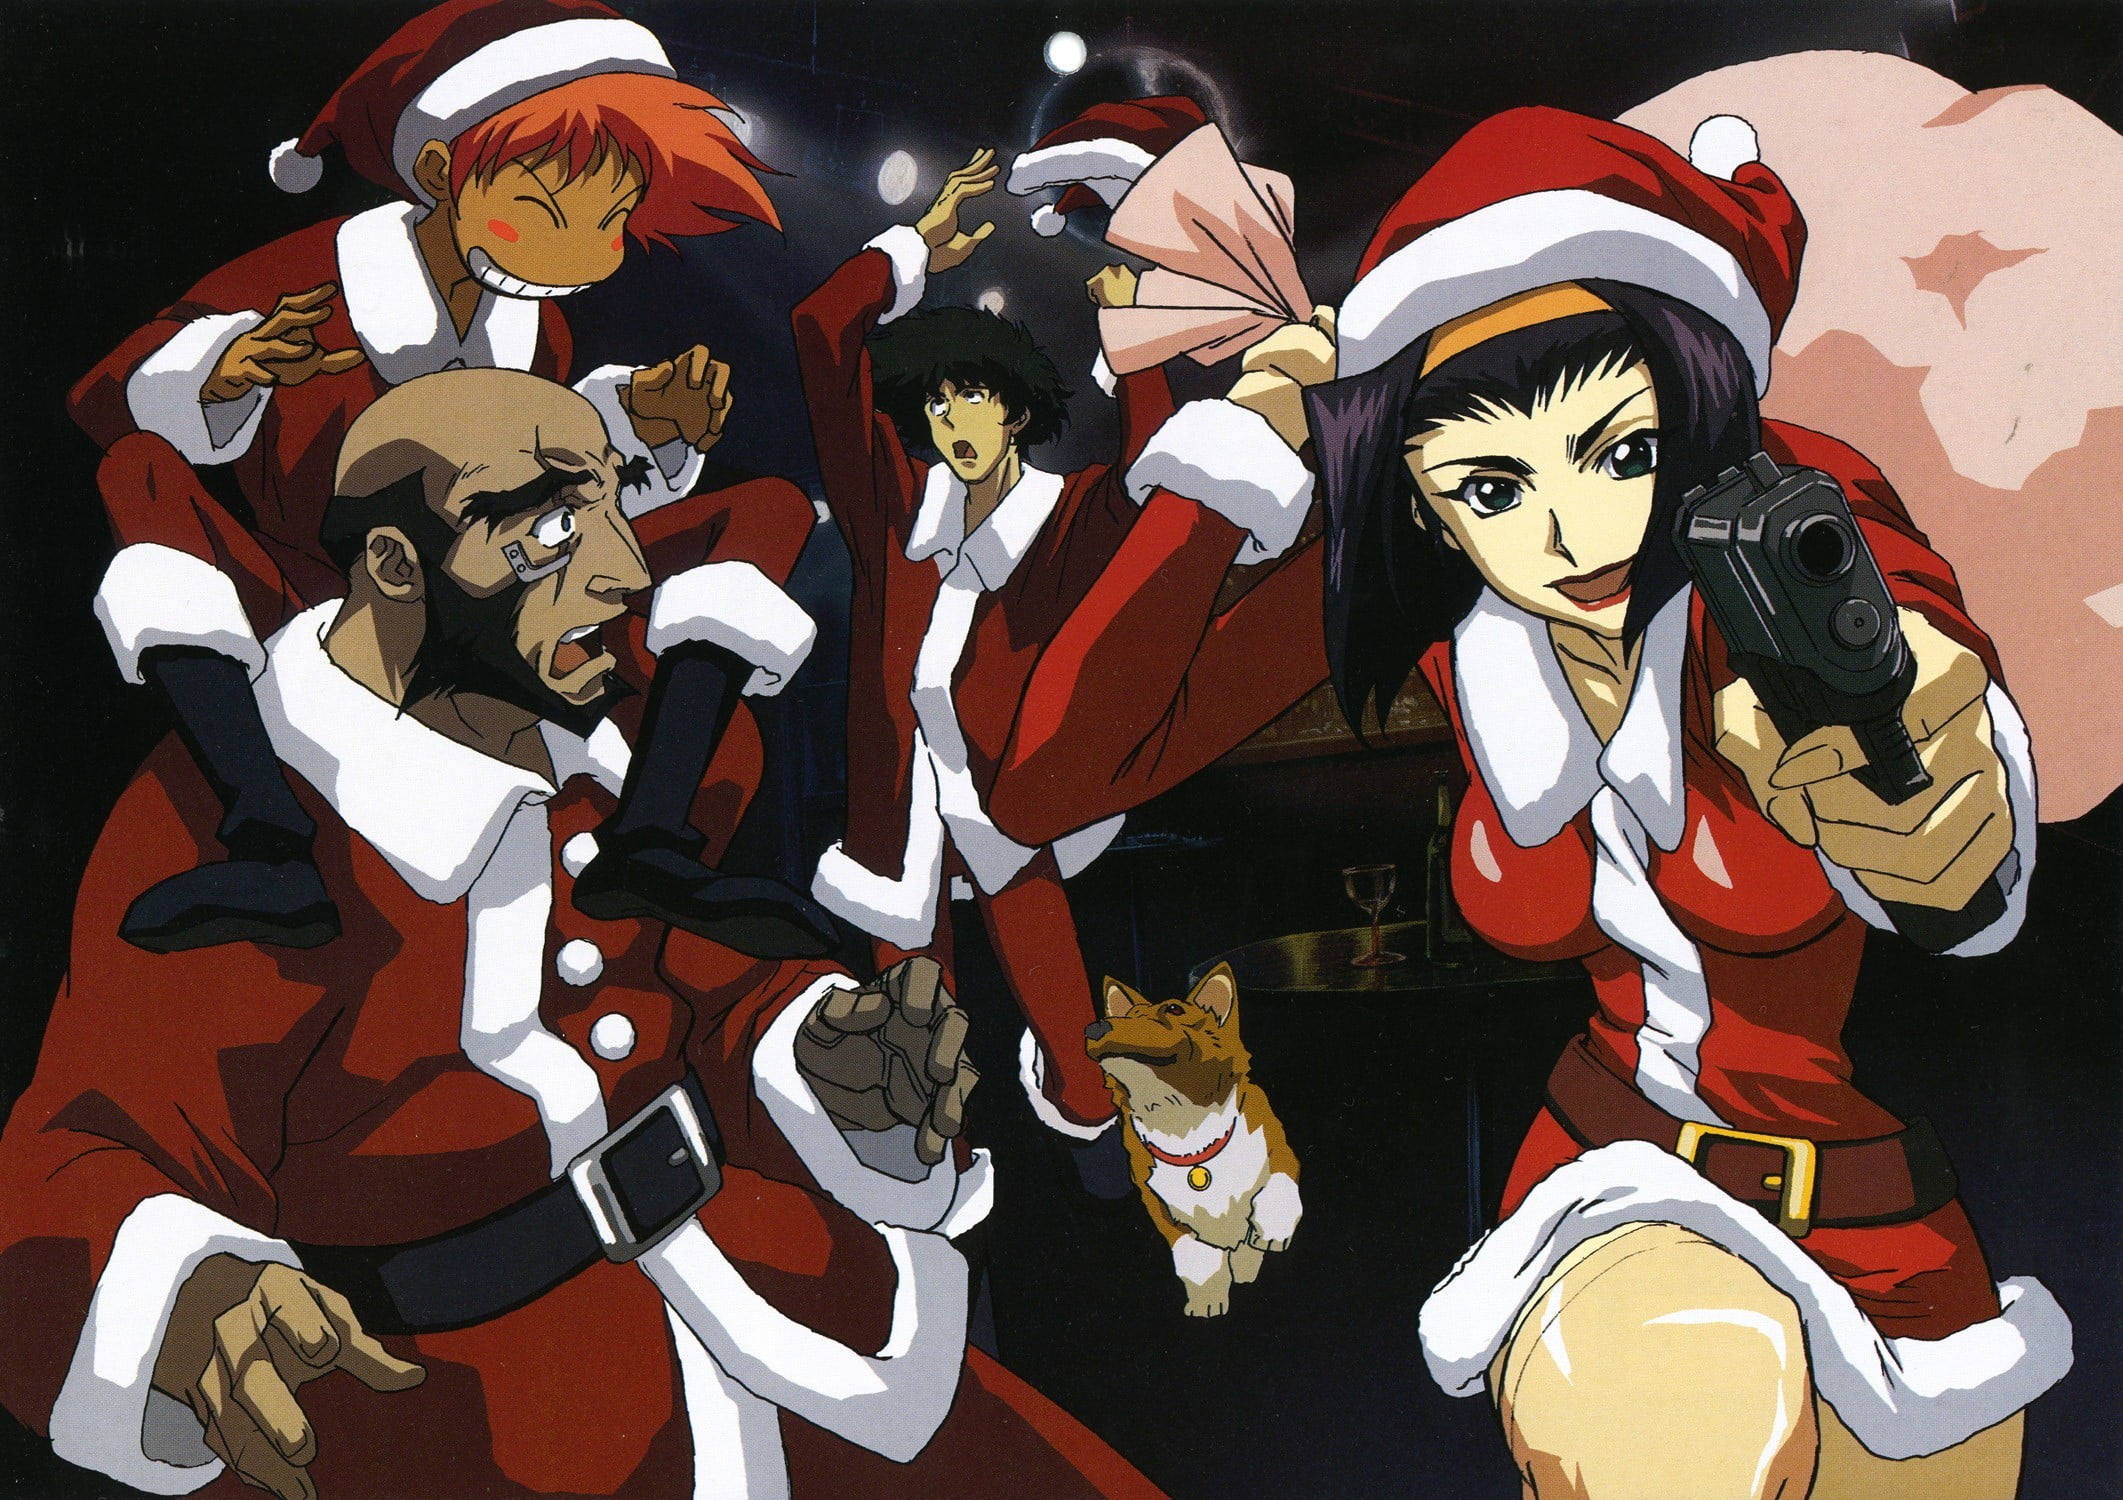 Cowboy Bebop in Santa Claus costume digital wallpaper, Cowboy Bebop, Christmas, anime, Spike Spiegel